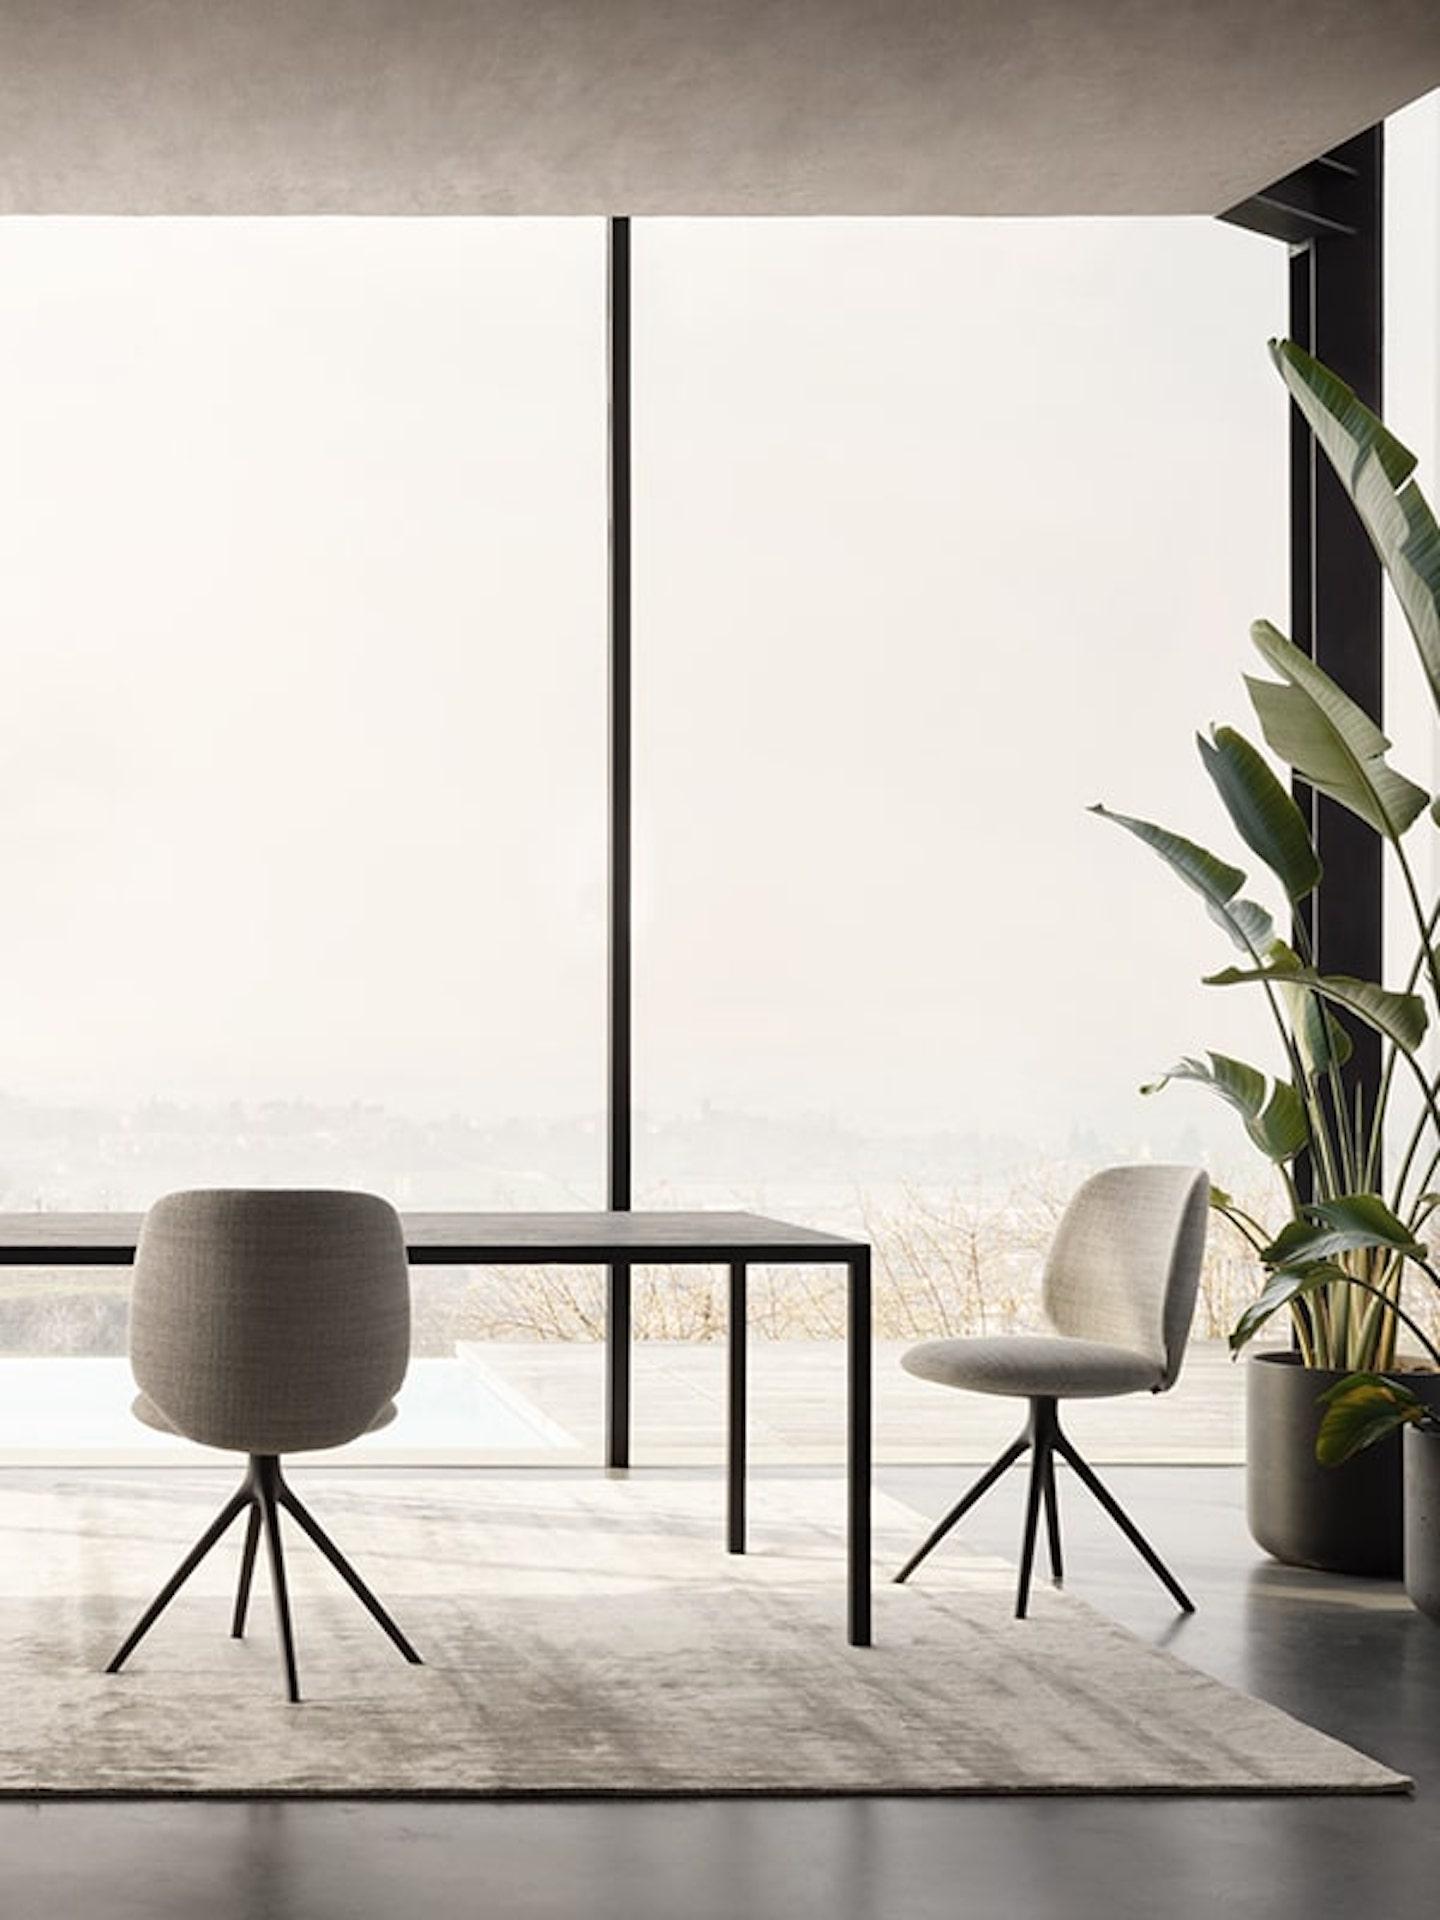 Universal Collection ist der Name der neuen Sitzfamilie, die von Jean-Marie Massaud für MDF Italia entworfen wurde und die sich durch ihre makellose Eleganz und außergewöhnliche Ergonomie auszeichnet. 
Bei den Stühlen und Sesseln mit Holzrücken oder